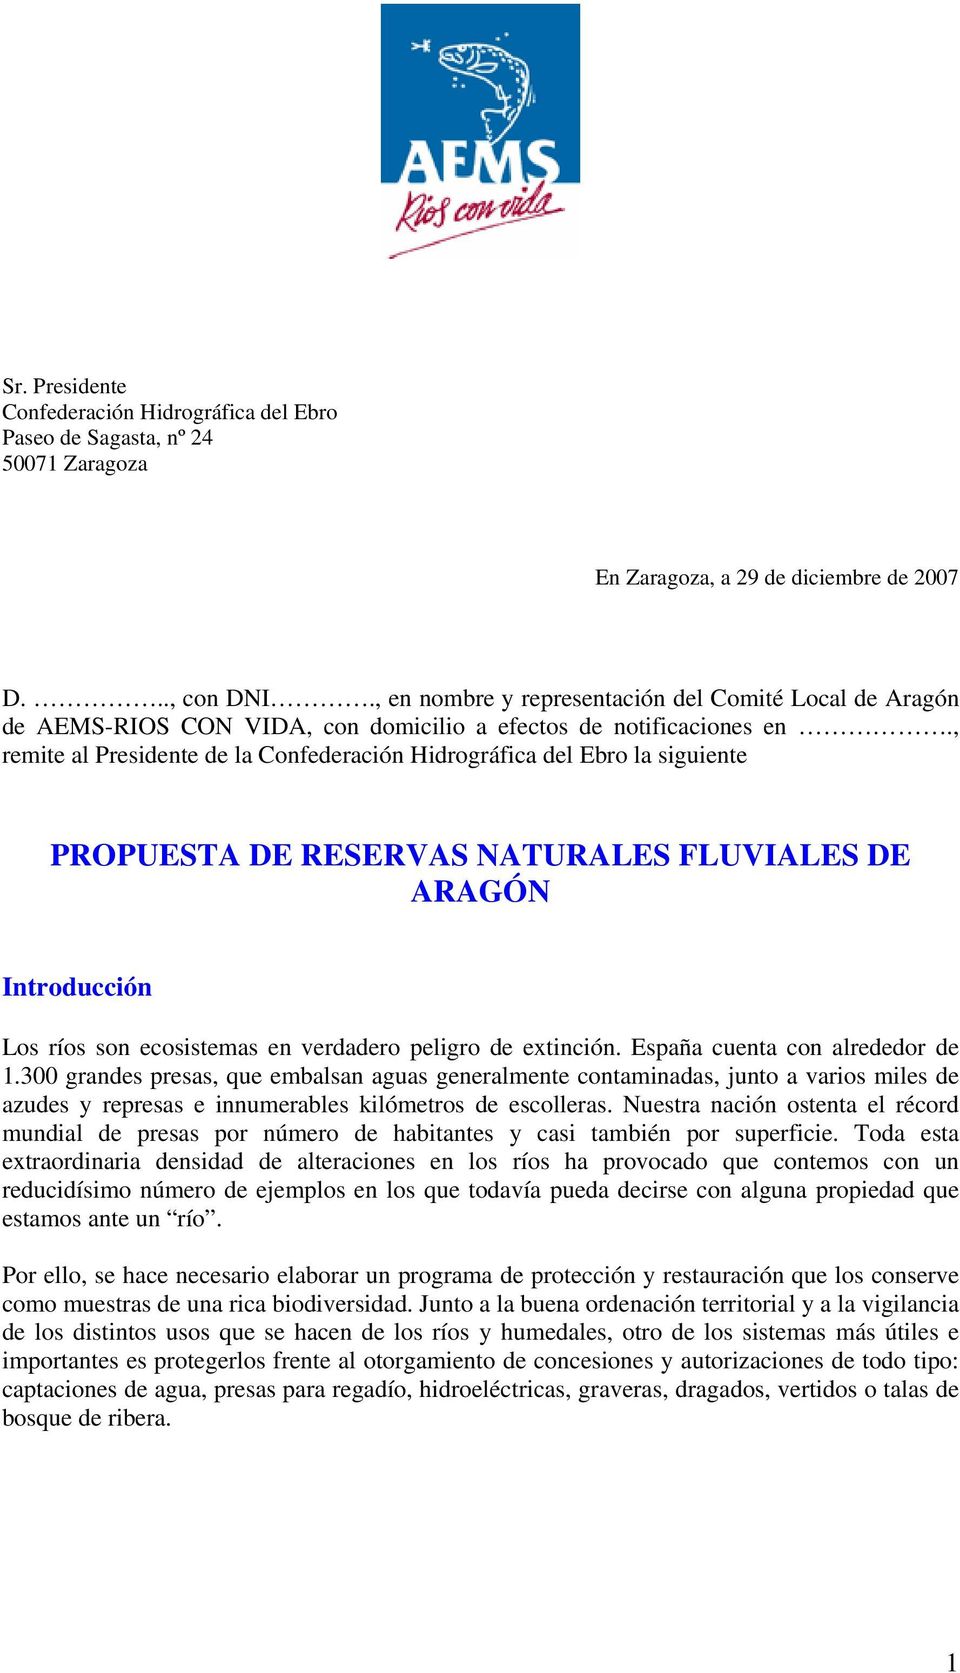 , remite al Presidente de la Confederación Hidrográfica del Ebro la siguiente PROPUESTA DE RESERVAS NATURALES FLUVIALES DE ARAGÓN Introducción Los ríos son ecosistemas en verdadero peligro de